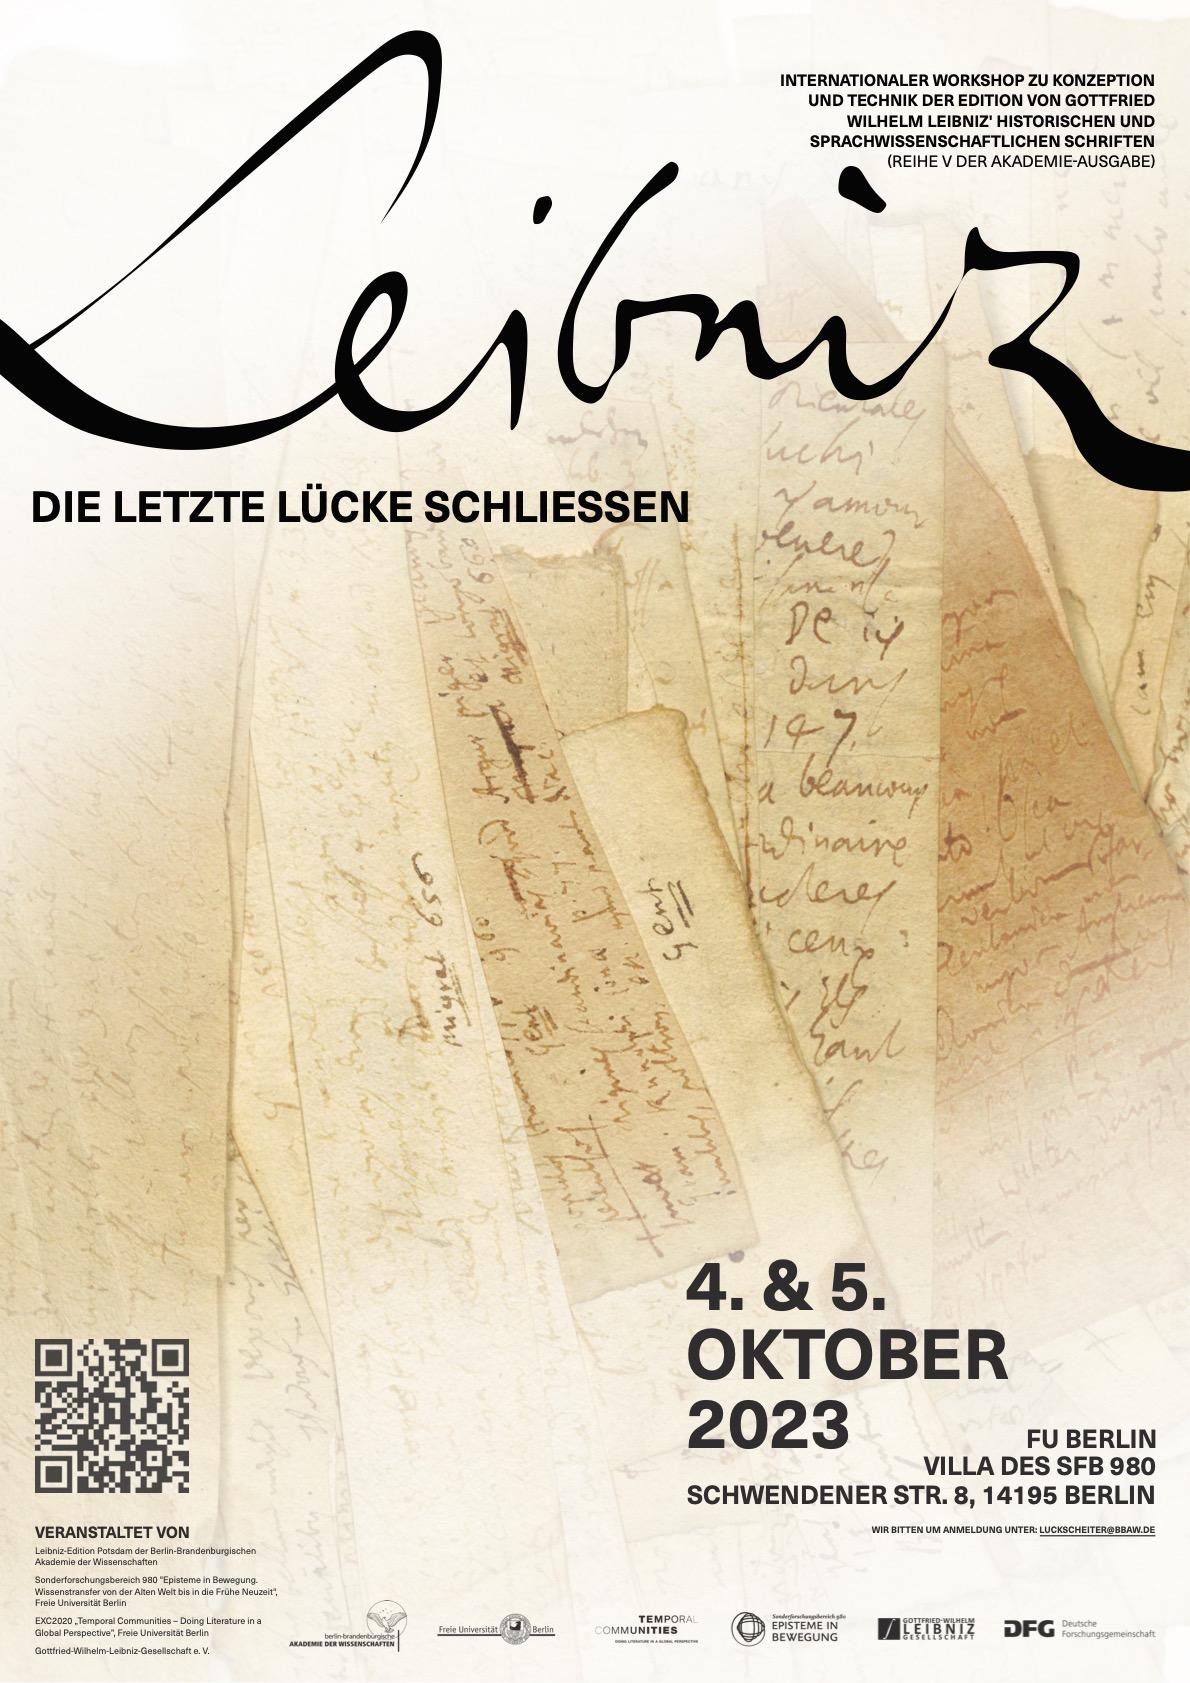 Leibniz_Konferenz-Poster_schwarz_auf_weiß_v5.1